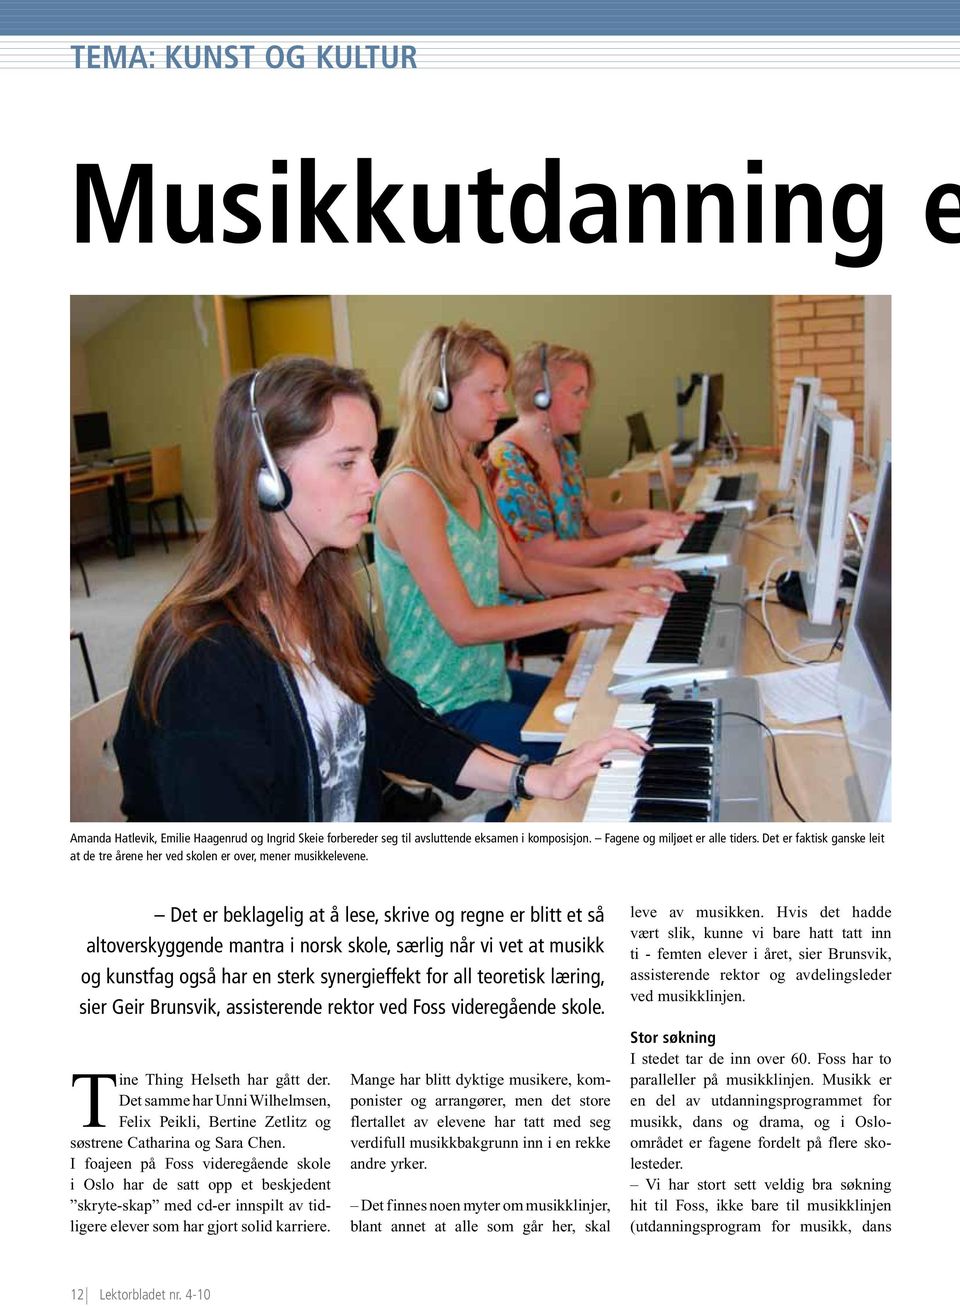 Det er beklagelig at å lese, skrive og regne er blitt et så altoverskyggende mantra i norsk skole, særlig når vi vet at musikk og kunstfag også har en sterk synergieffekt for all teoretisk læring,